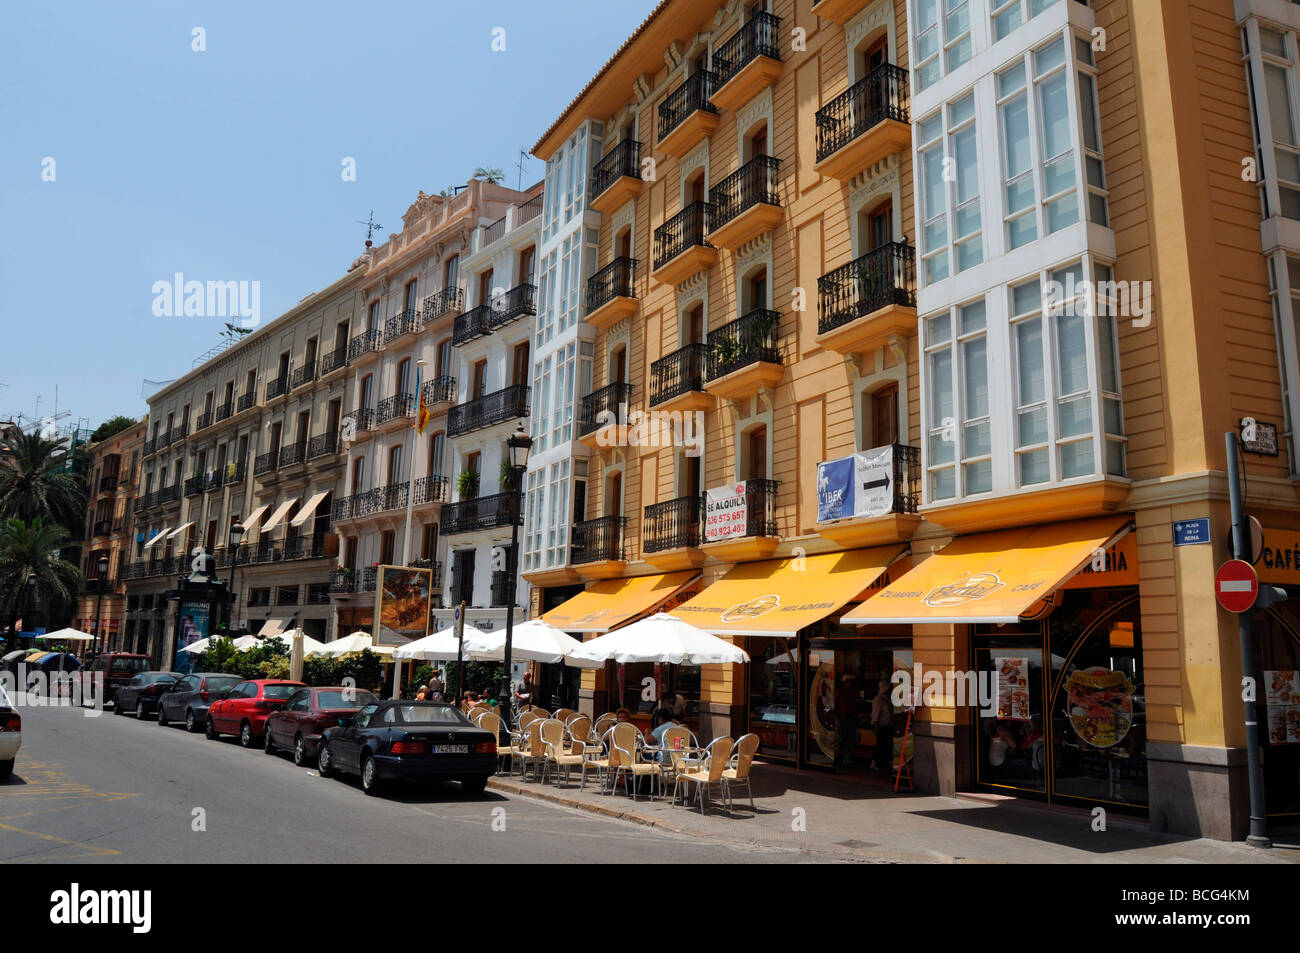 Cafe de la chaussée dans la plaza de la Reina dans la ville de Valence, Espagne Banque D'Images